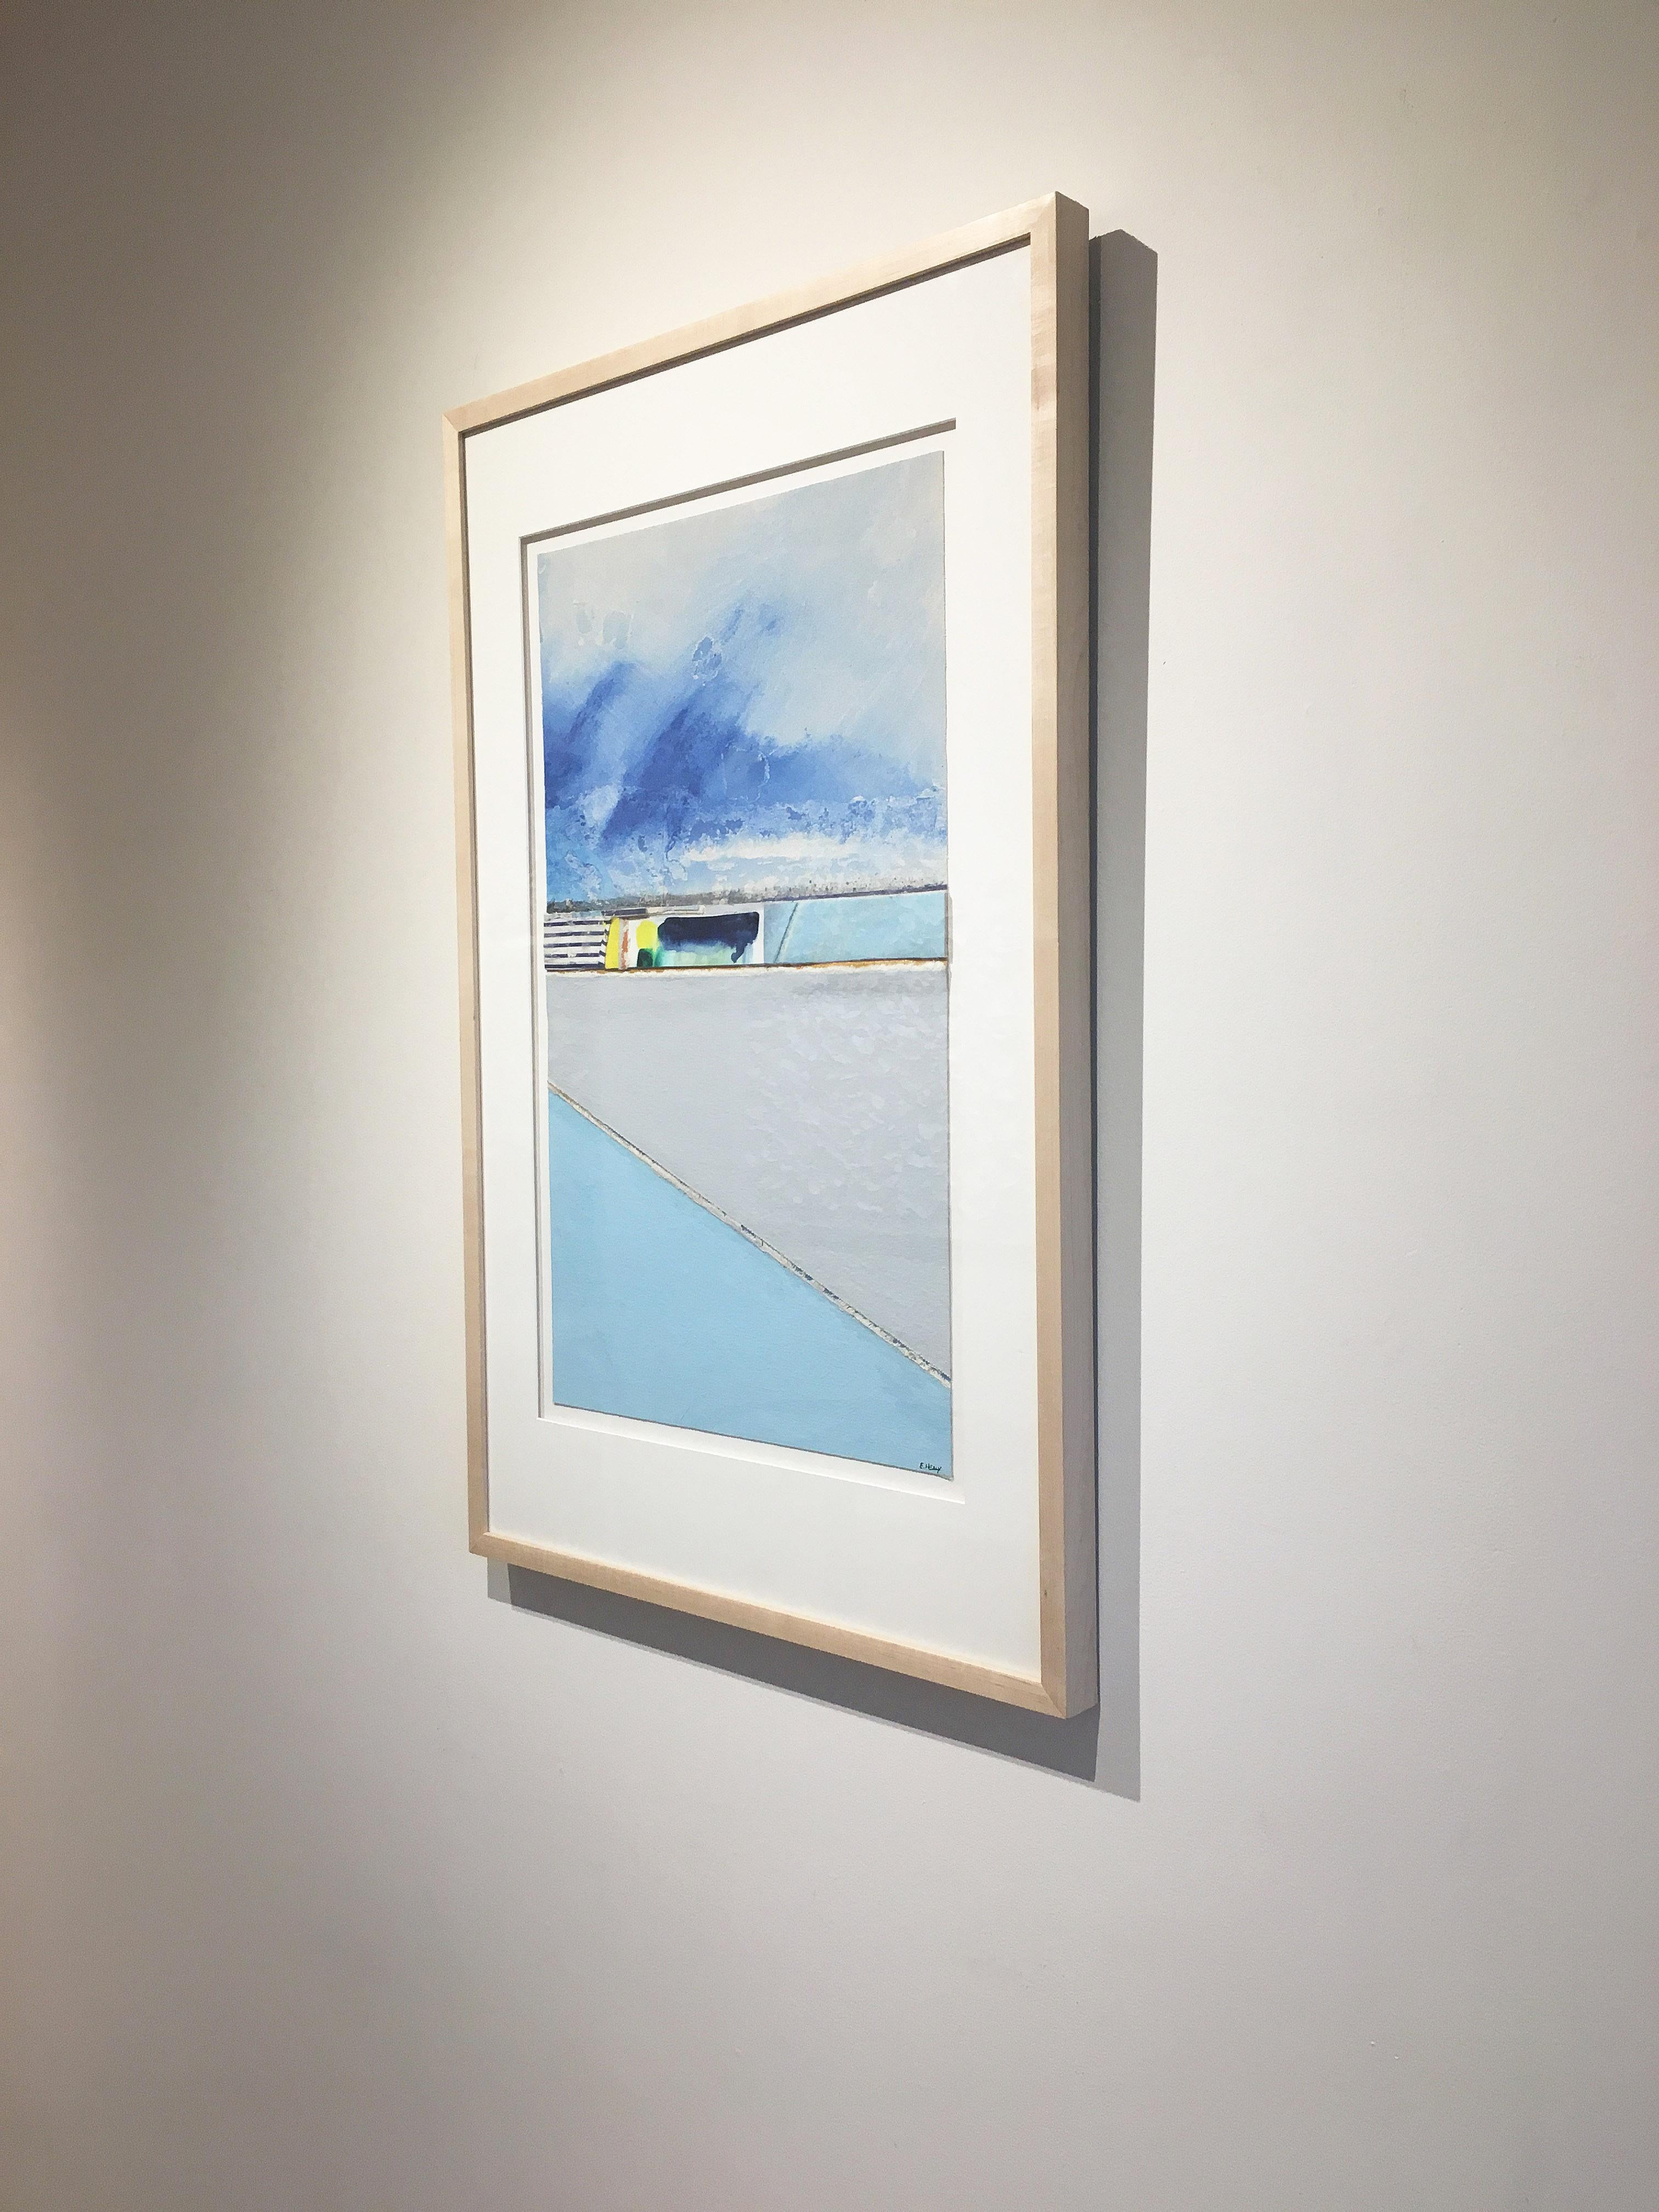 Coastal painting, Mixed media abstract, Eugene Healy, Coastal Series #21 2